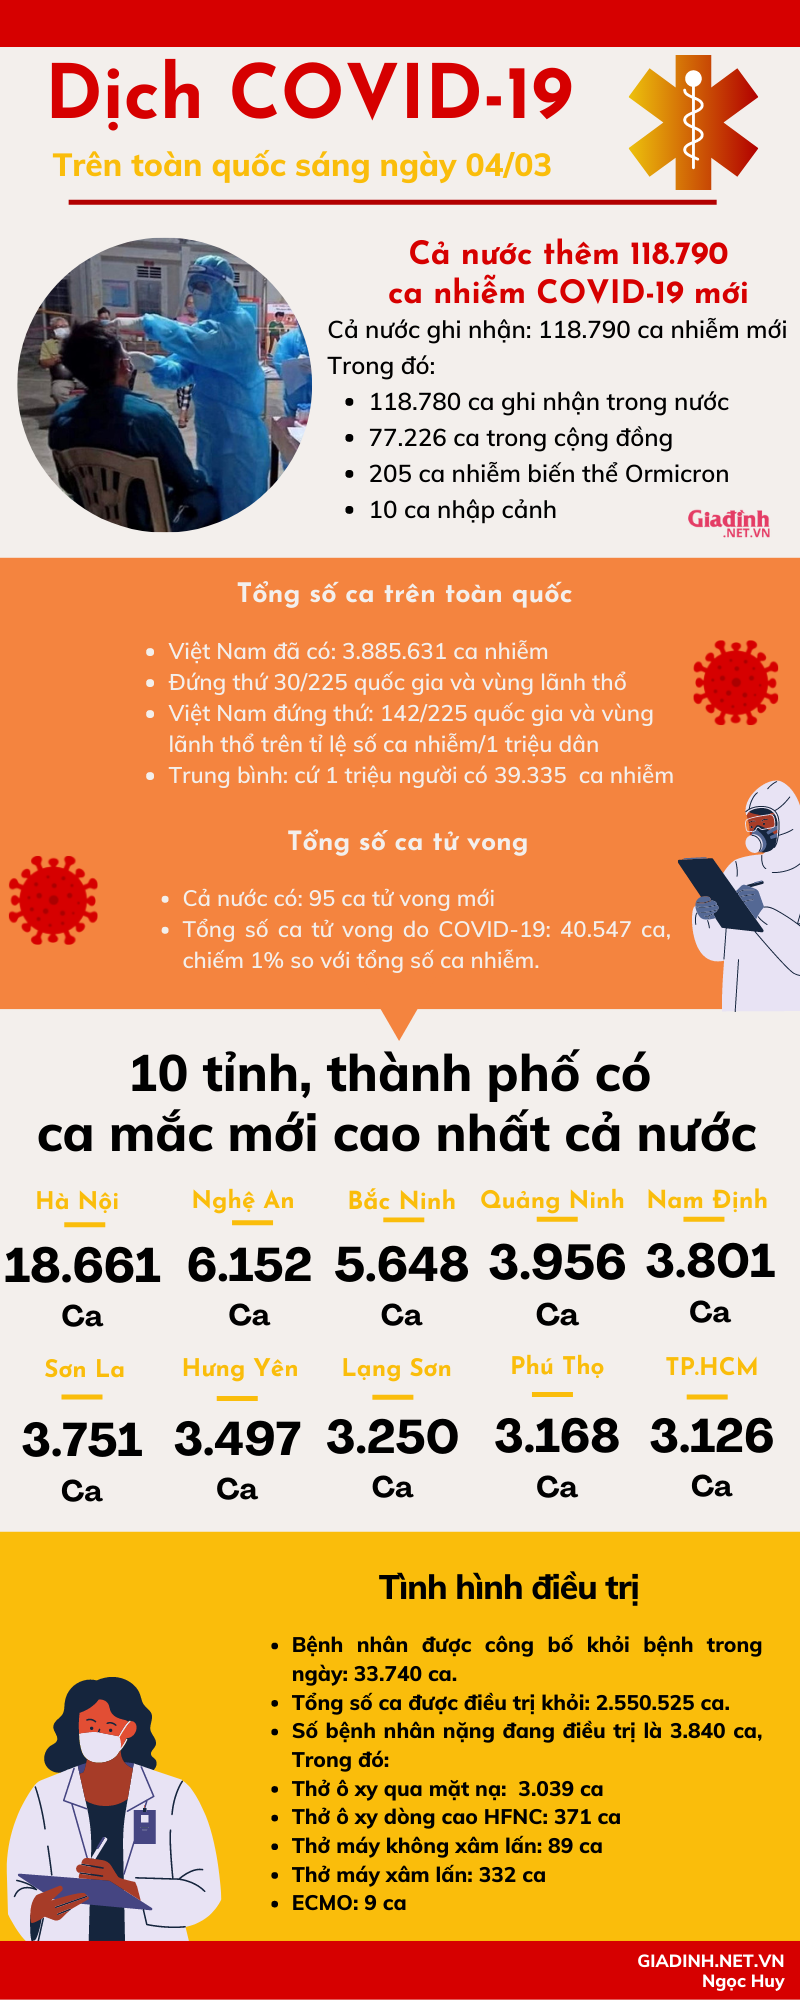 Sáng 04/03: Cả nước có 118.790, Hà Nội có 18.661 ca nhiễm mới - Ảnh 1.